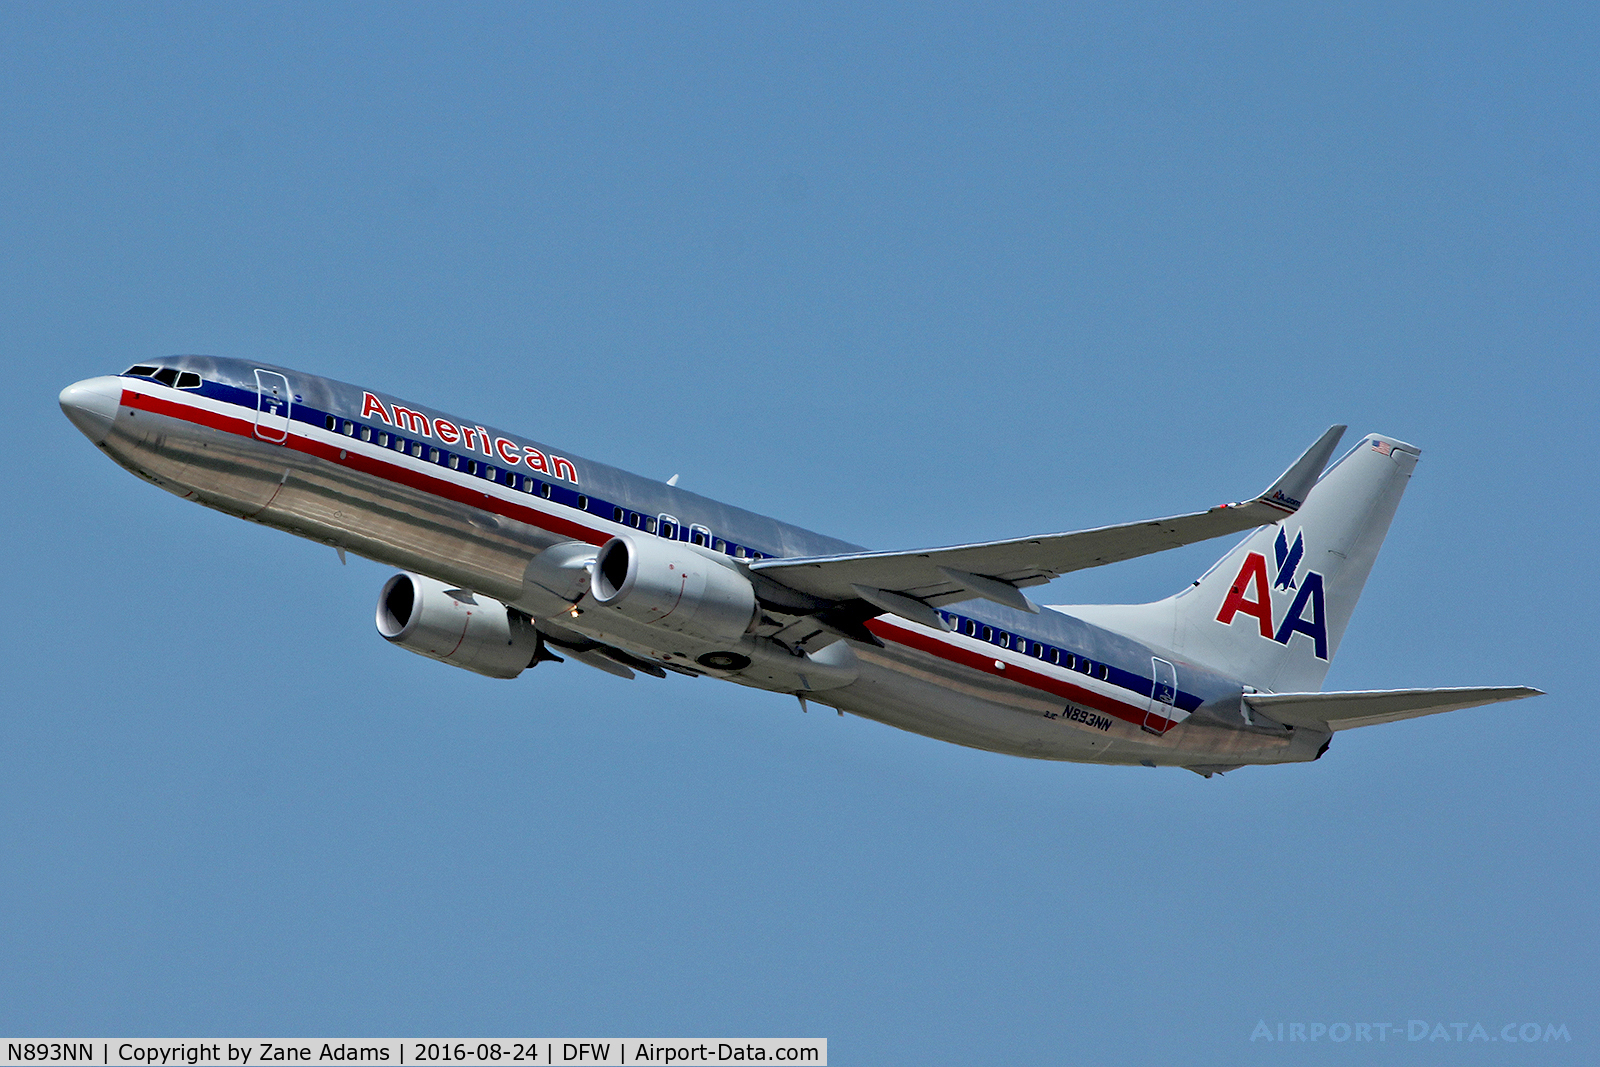 N893NN, 2012 Boeing 737-823 C/N 33316, Departing DFW Airport